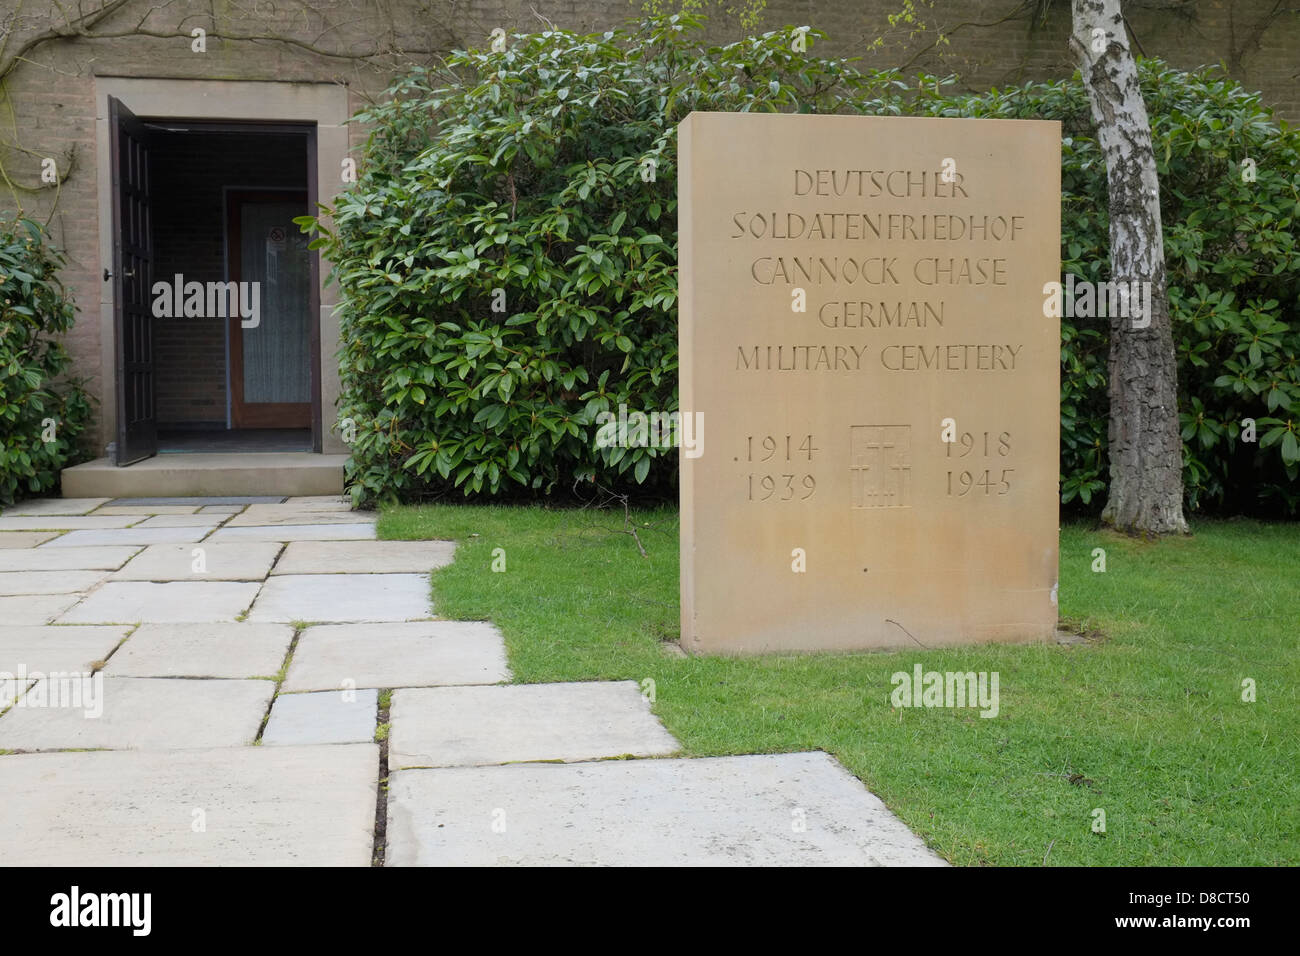 Der Eingang in die Cannock Chase deutschen Soldatenfriedhof, Staffordshire, England. Stockfoto